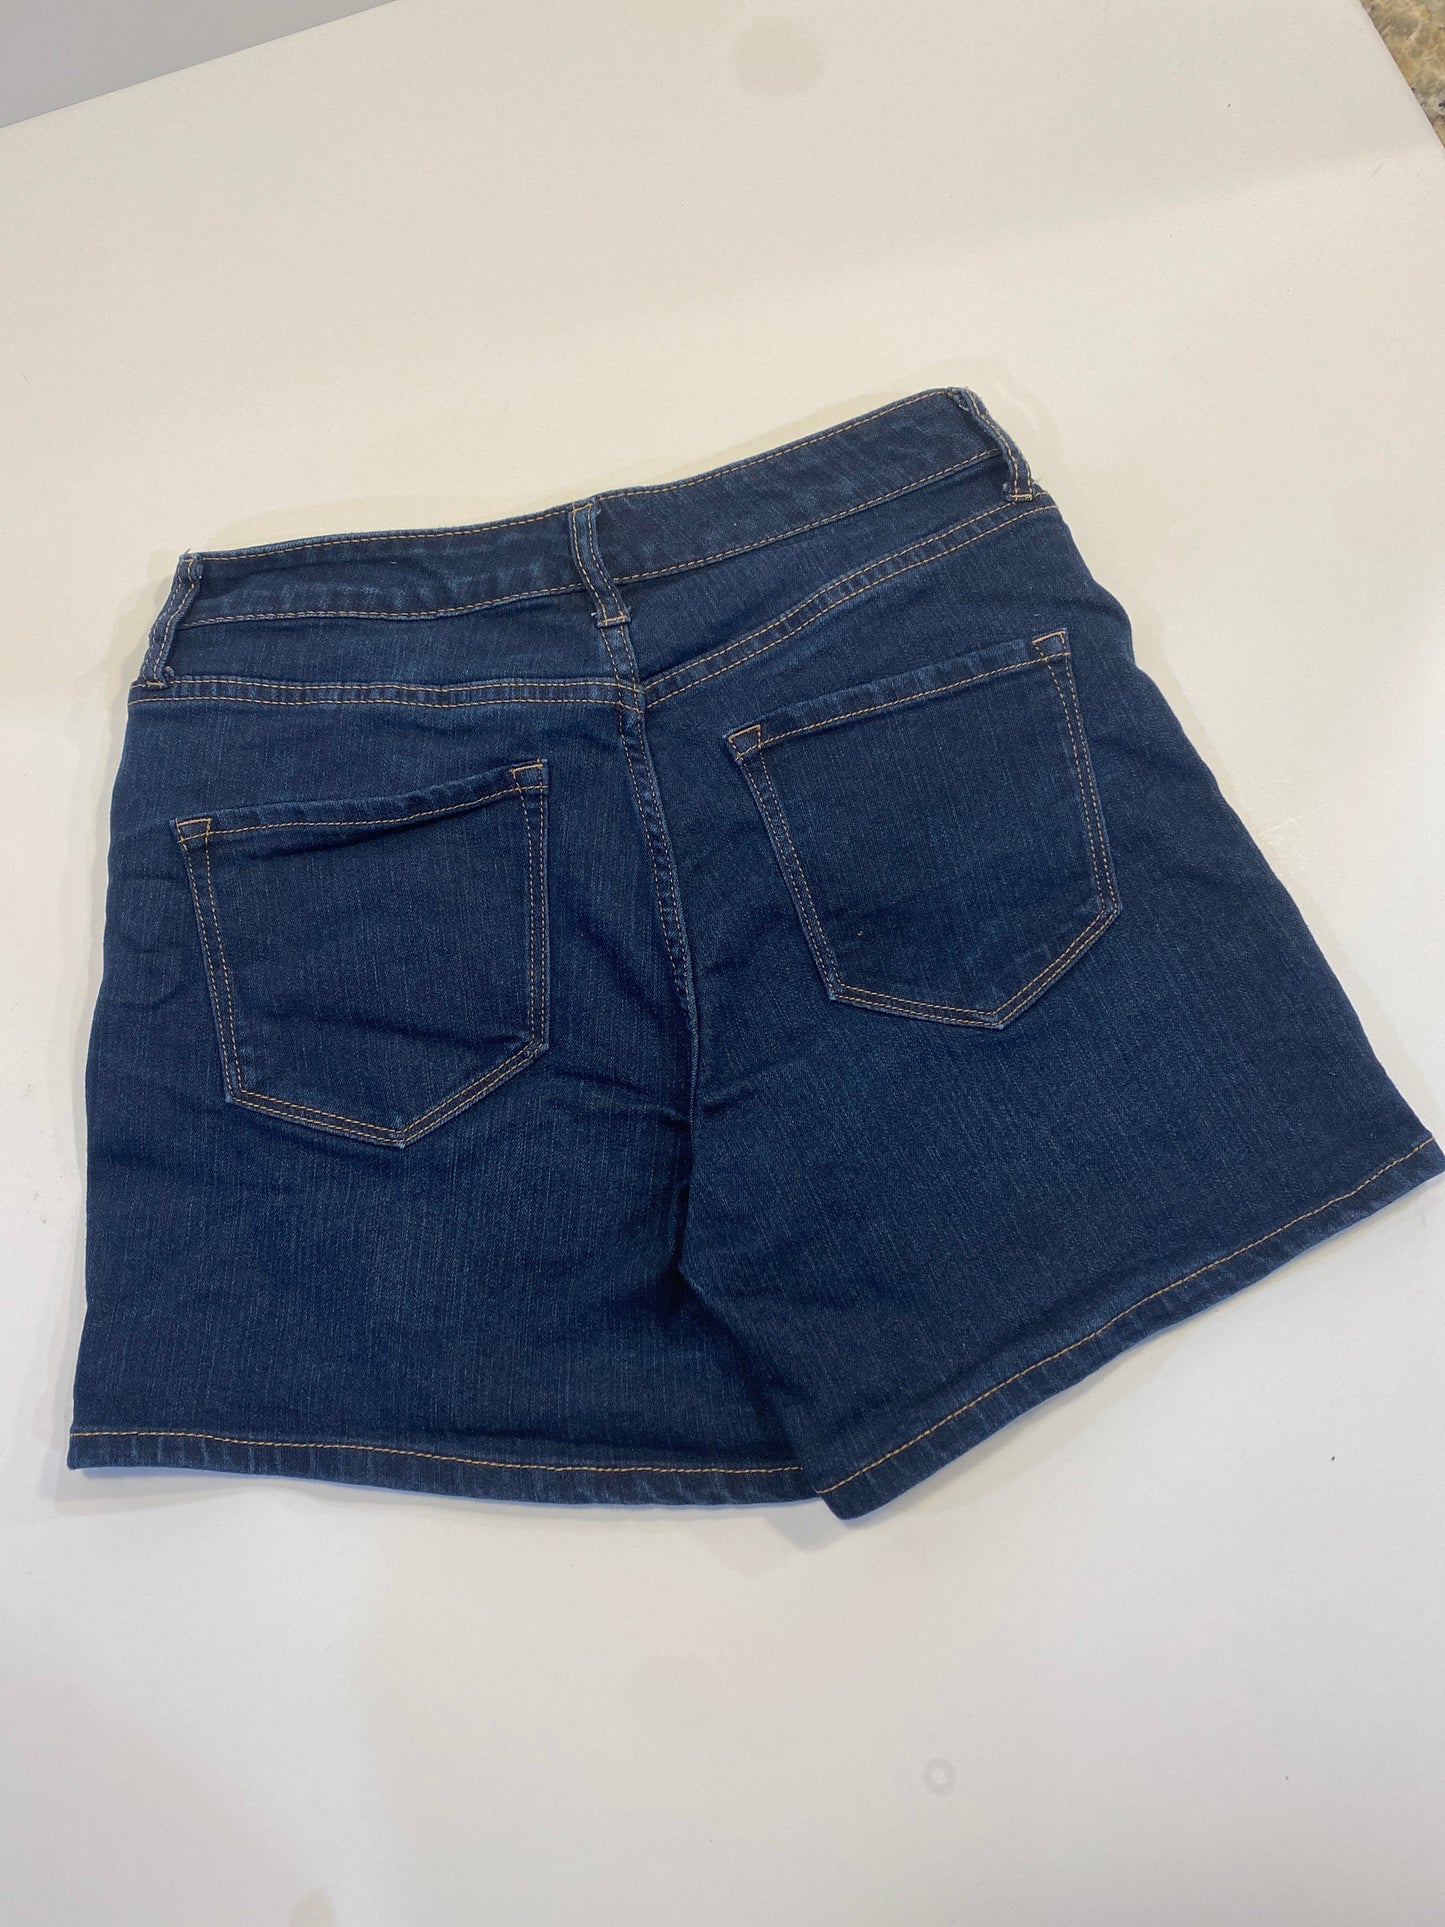 Blue Denim Shorts Nine West, Size 8